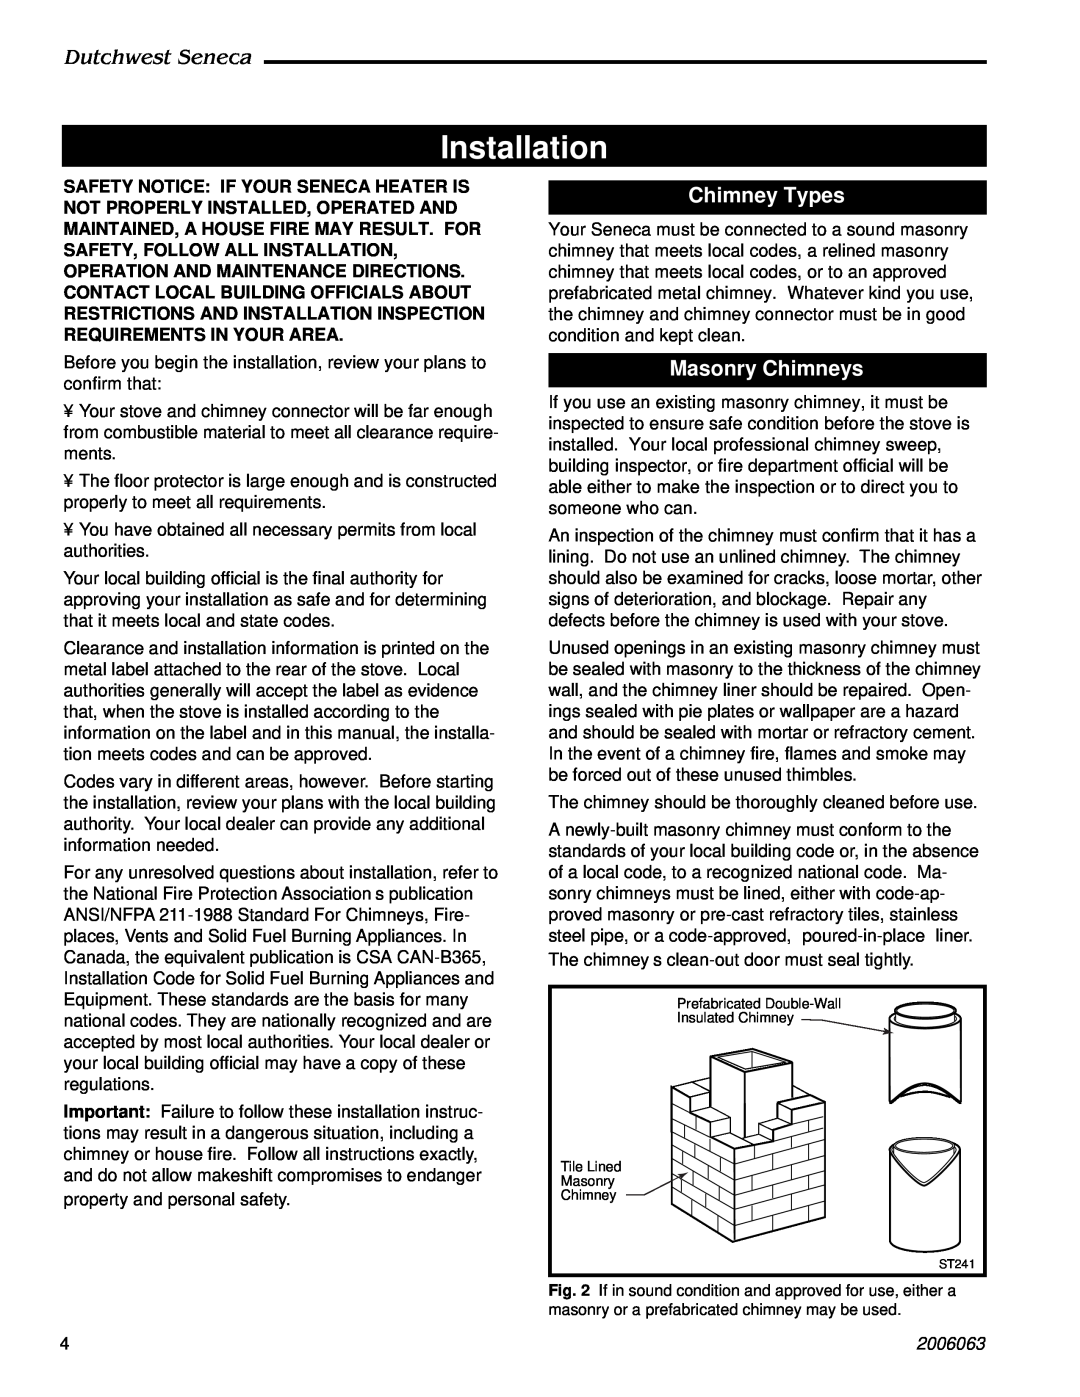 Vermont Casting 2170 manual Installation, Chimney Types, Masonry Chimneys, Dutchwest Seneca, 2006063 